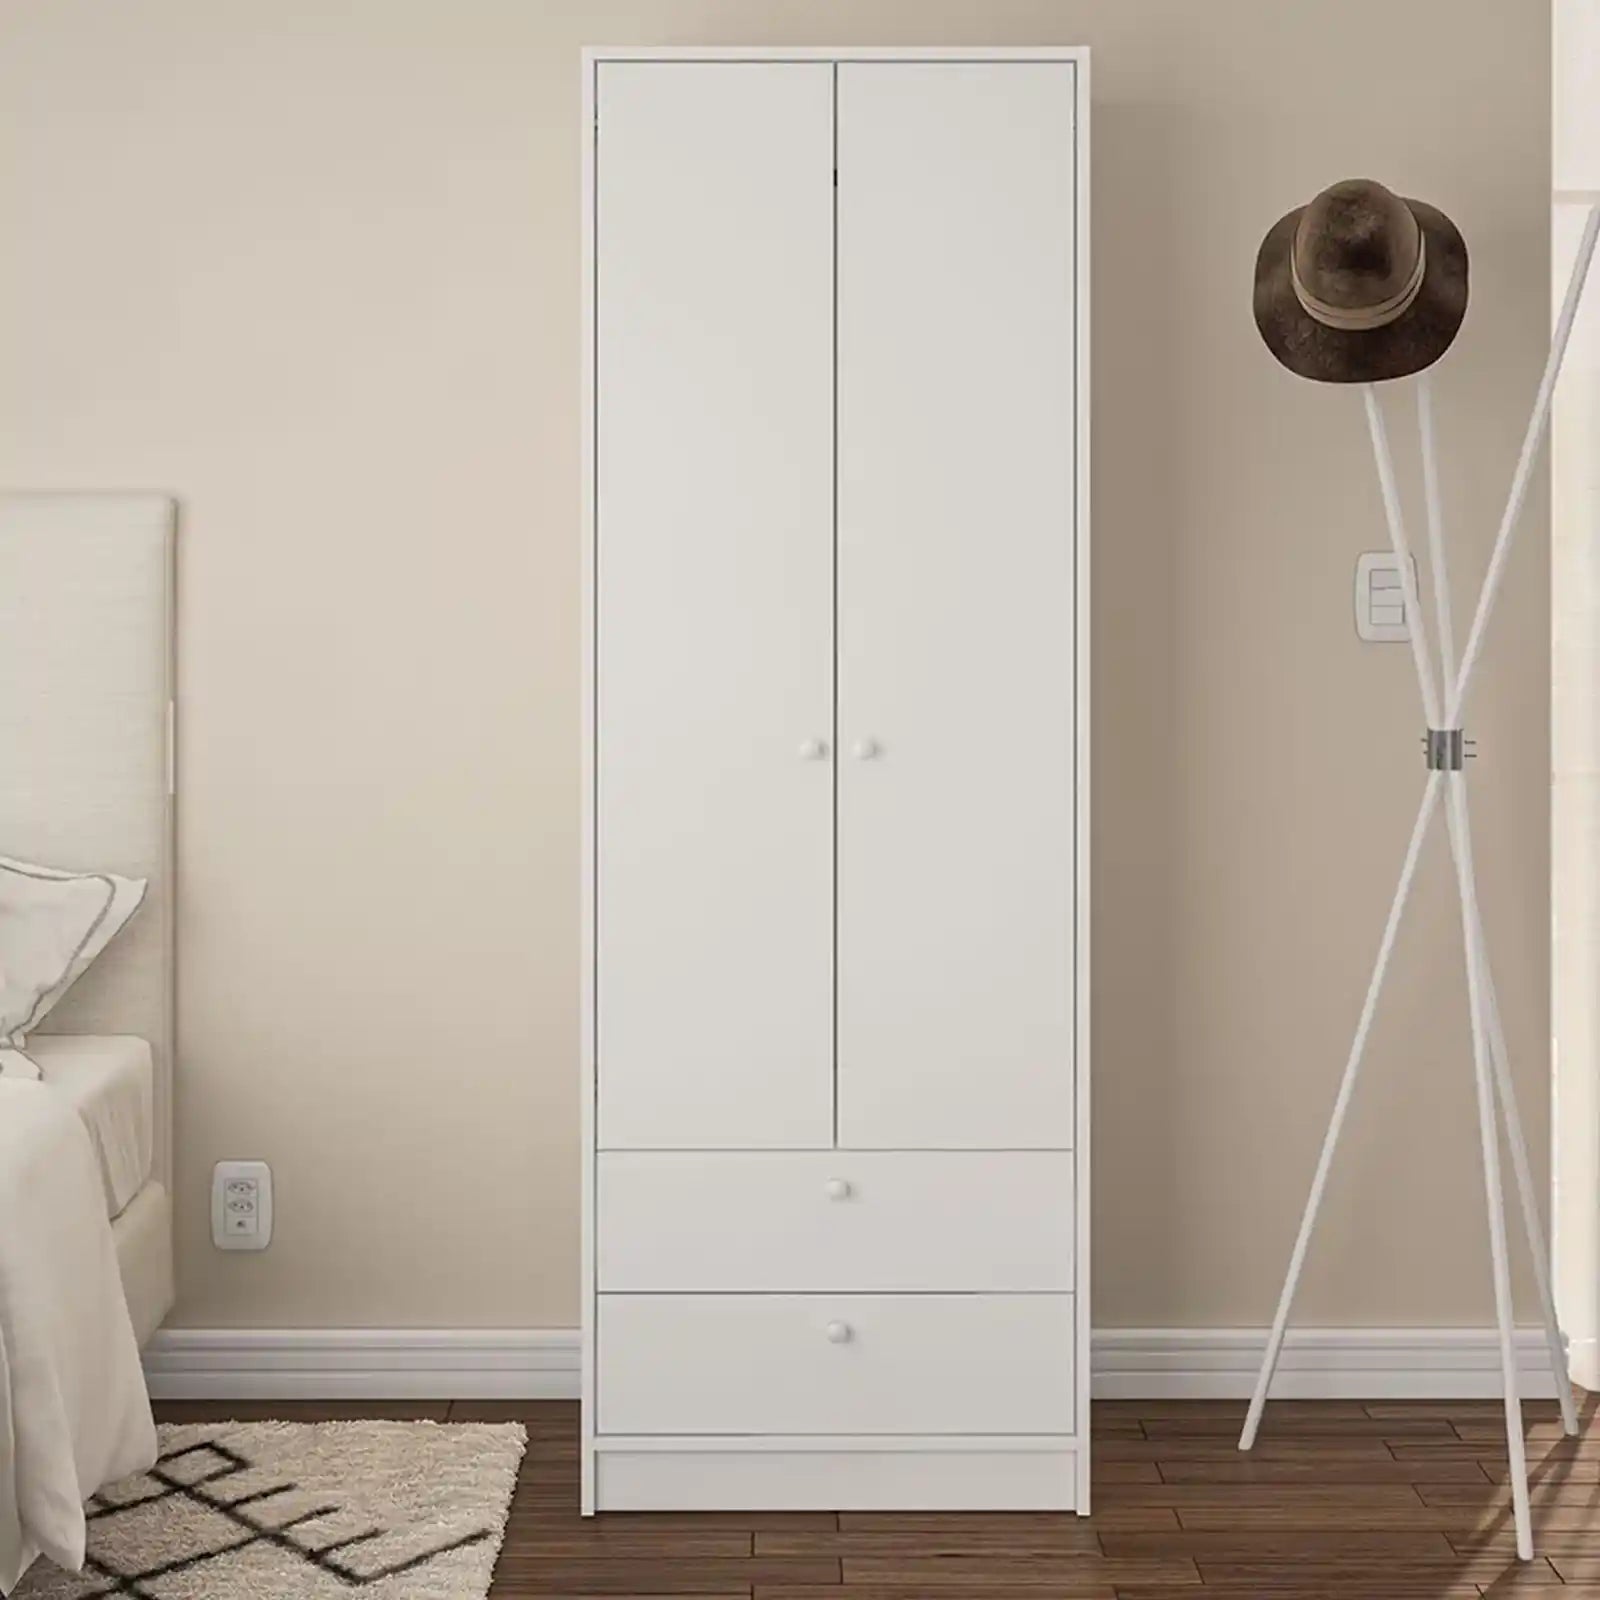 Organice su dormitorio con un armario de 2 puertas y 2 cajones | Acabado blanco elegante | Construcción duradera